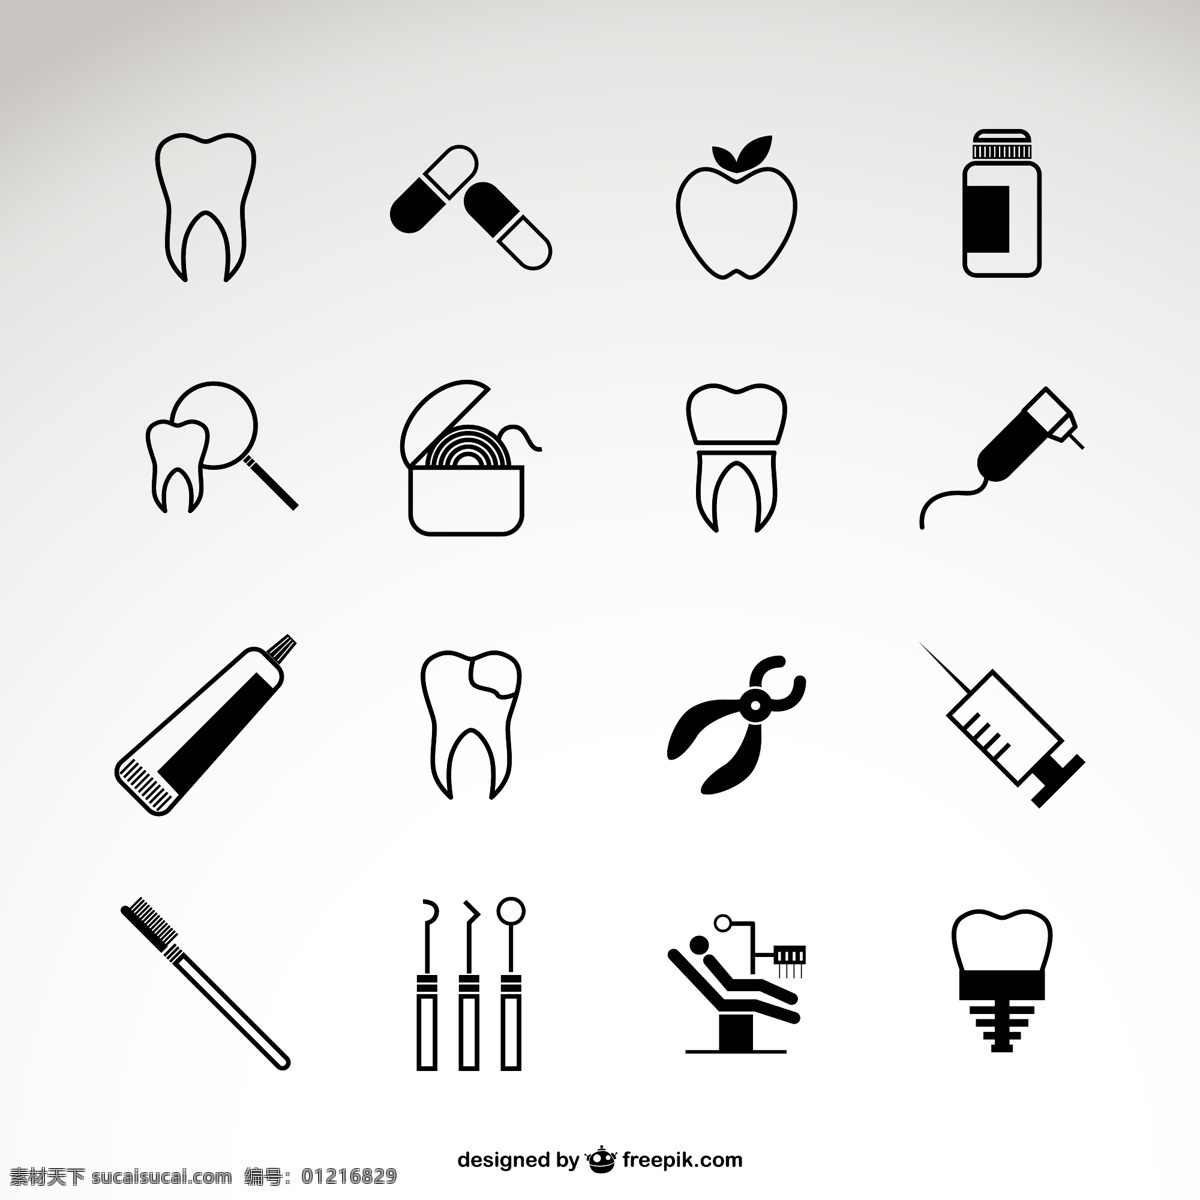 牙医的图标集 图标设计 医疗 图标 模板 健康 苹果 图形 布局 工具 图形设计 牙科 口腔 牙科医生 元素 象形文字 设计元素 白色